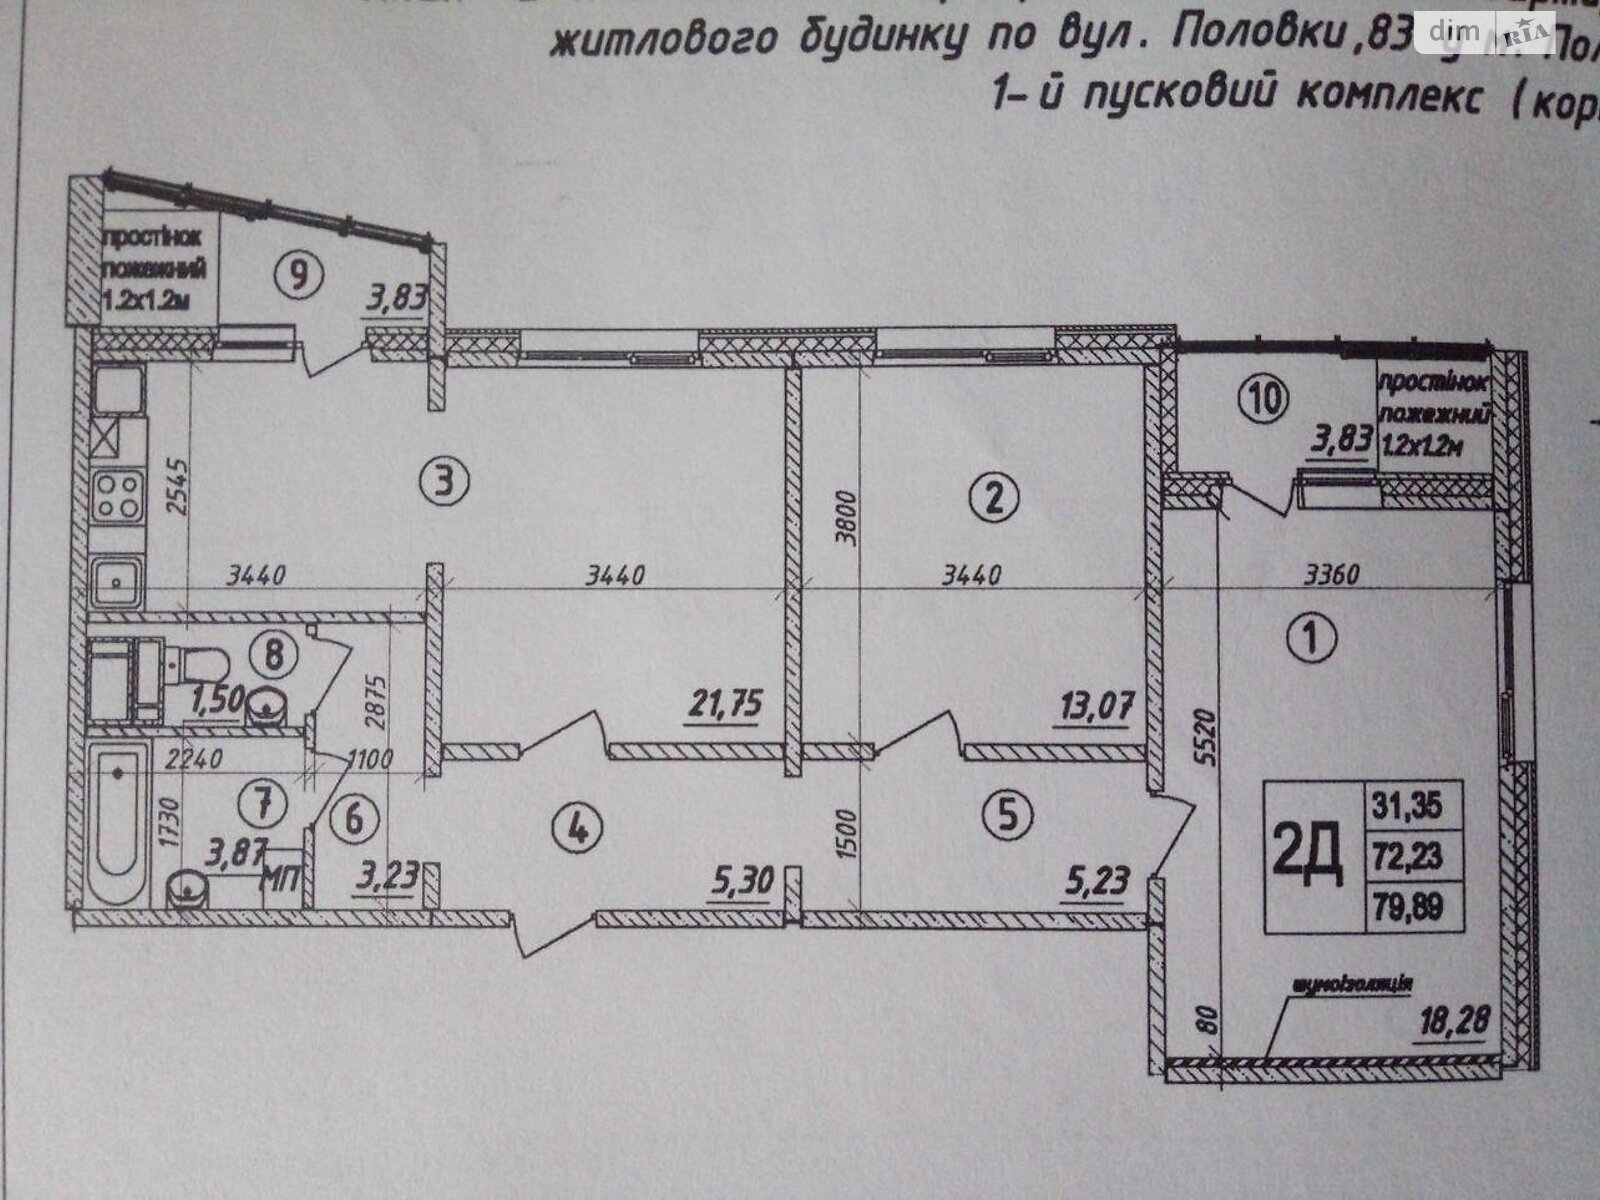 Продажа двухкомнатной квартиры в Полтаве, на ул. Половка 83, район Юровка фото 1